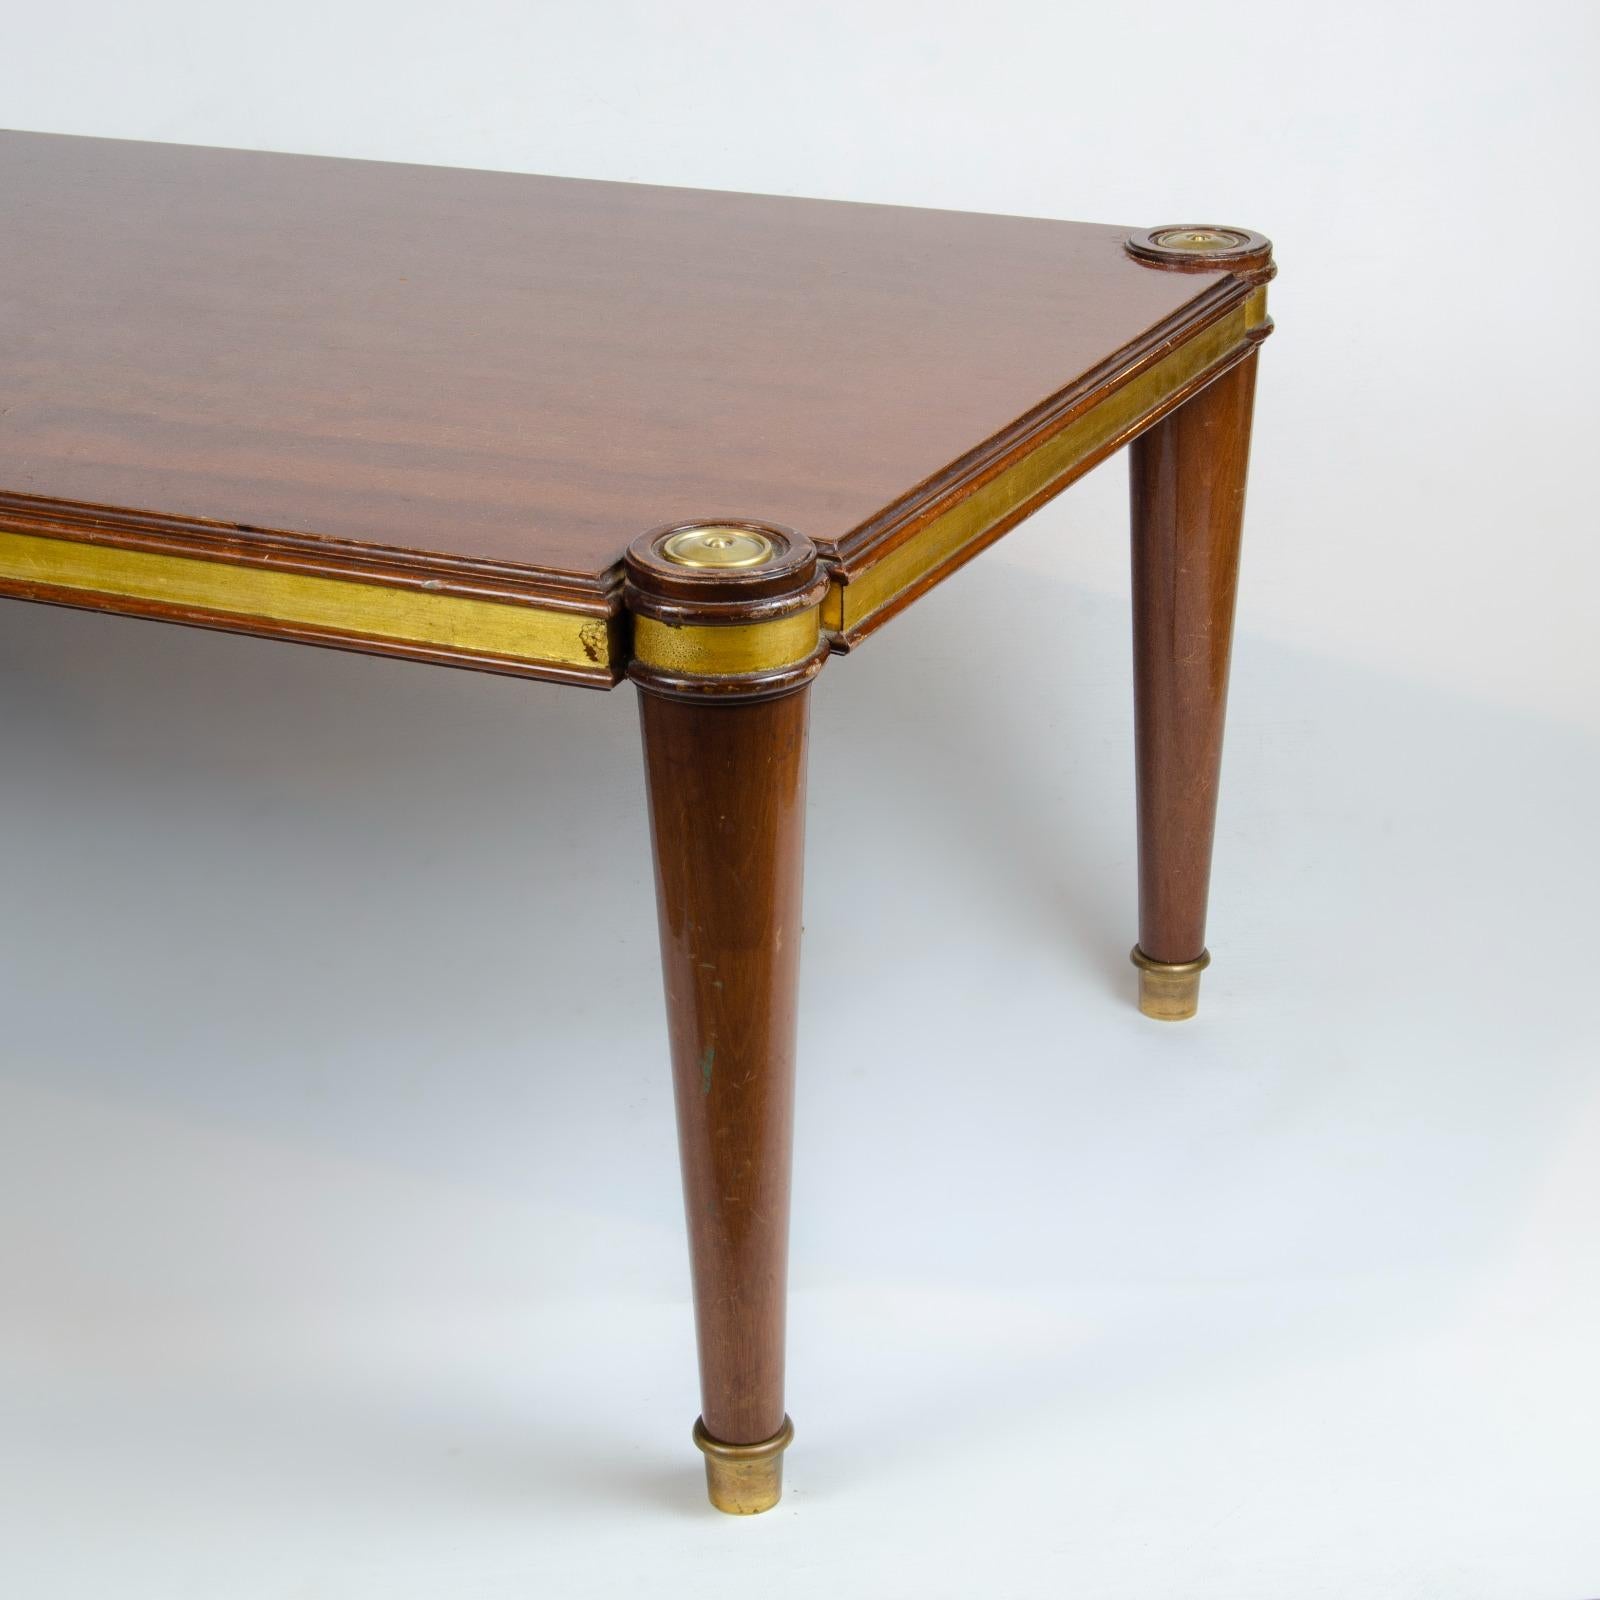 Dieser französische Couchtisch im Art-déco-Stil ist von Maison Jansen. Der Tisch aus den 1940er Jahren ist aus gebeizter Eiche gefertigt und mit Blattgoldkragen über den Beinen versehen. Das Tischbett hat ein dekoratives Design aus den 1940er Jahren